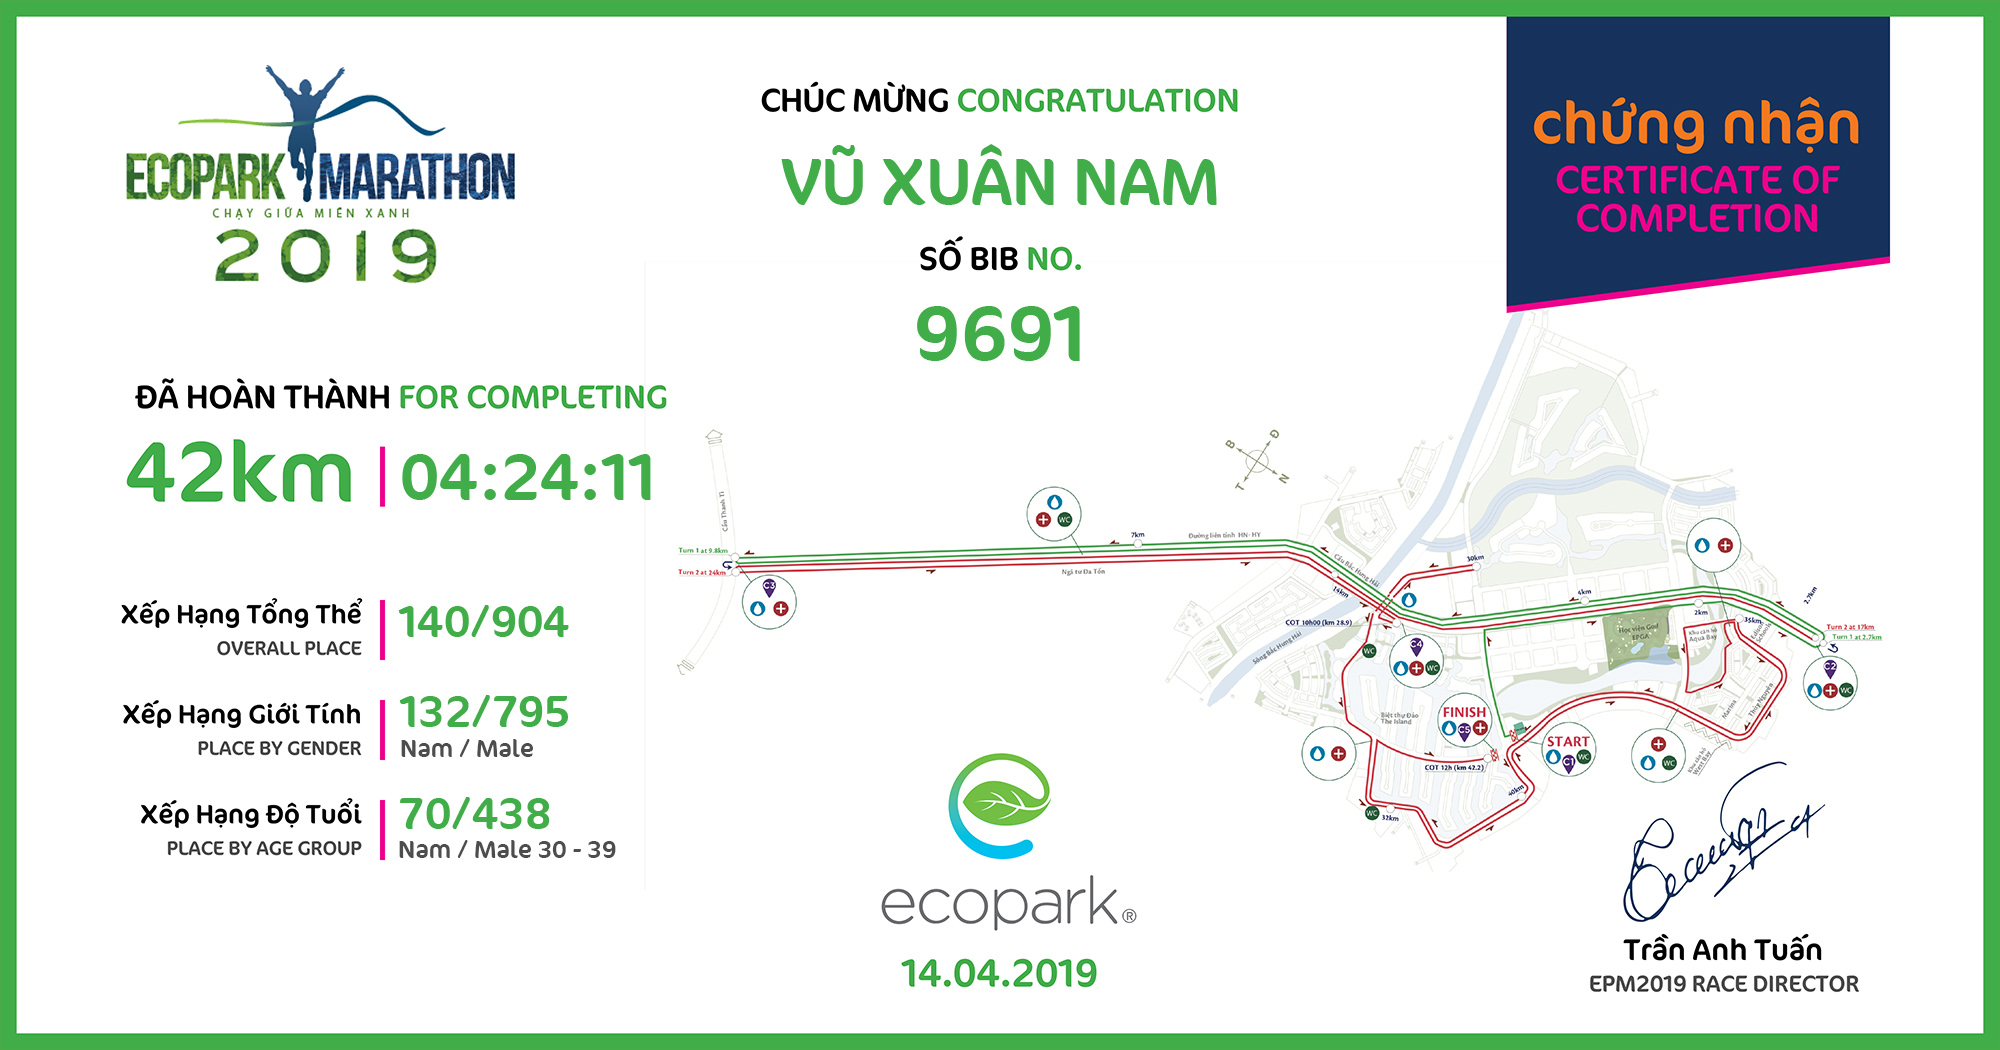 9691 - Vũ Xuân Nam